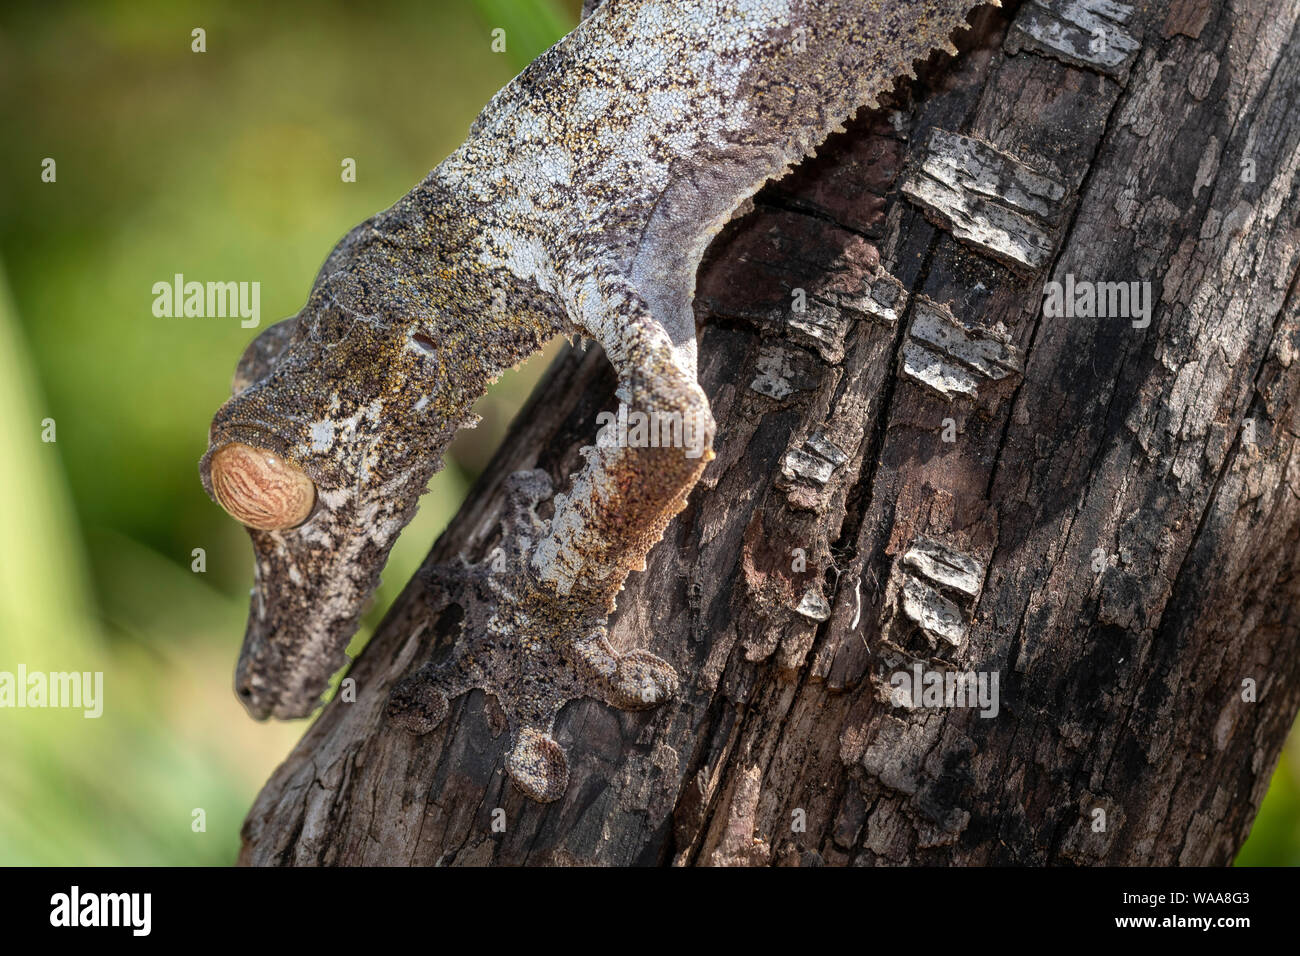 La hoja gigante colas; gecko Uroplatus fimbriatus, es un reptil nocturno hasta 30 centímetros de largo que vive endémico de Madagascar. Los animales son Foto de stock